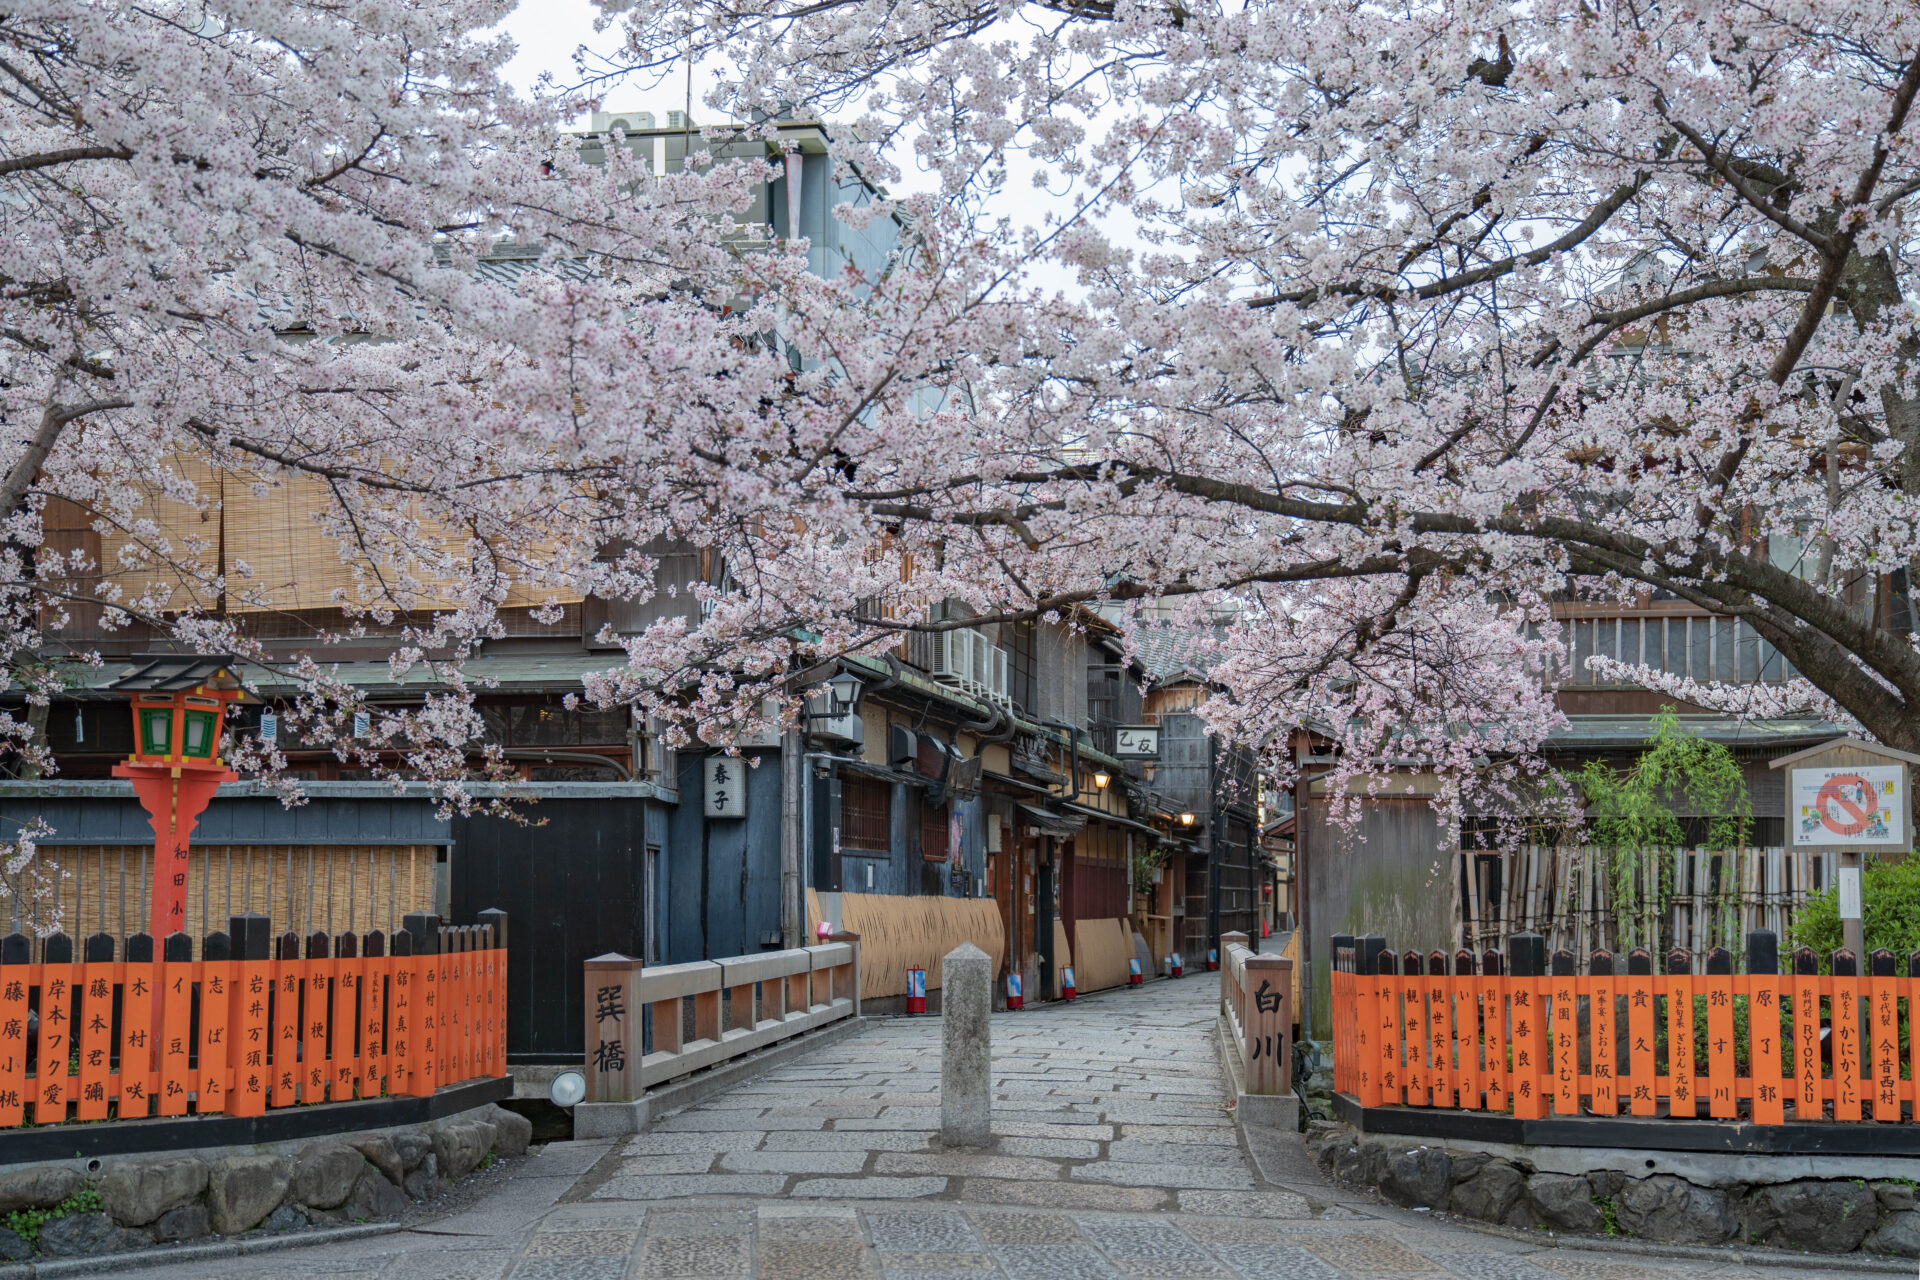 祇園白川のインスタ映えする場所と散歩・観光ルート【春の桜が絶景】